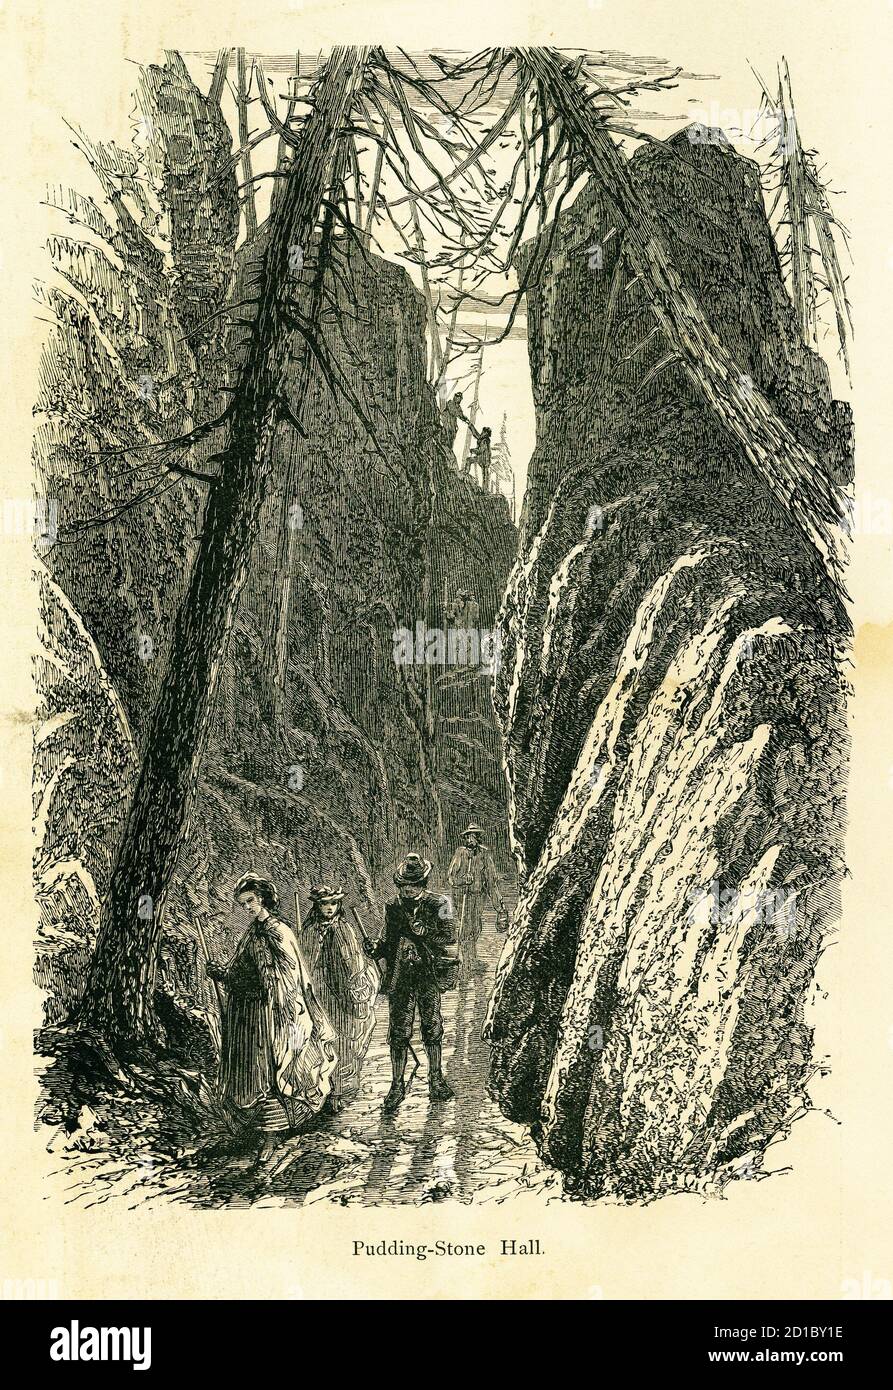 Stich aus dem 19. Jahrhundert der Puddingstone Hall in den Catskill Mountains, US-Bundesstaat New York. Illustration veröffentlicht im malerischen Amerika oder La Stockfoto